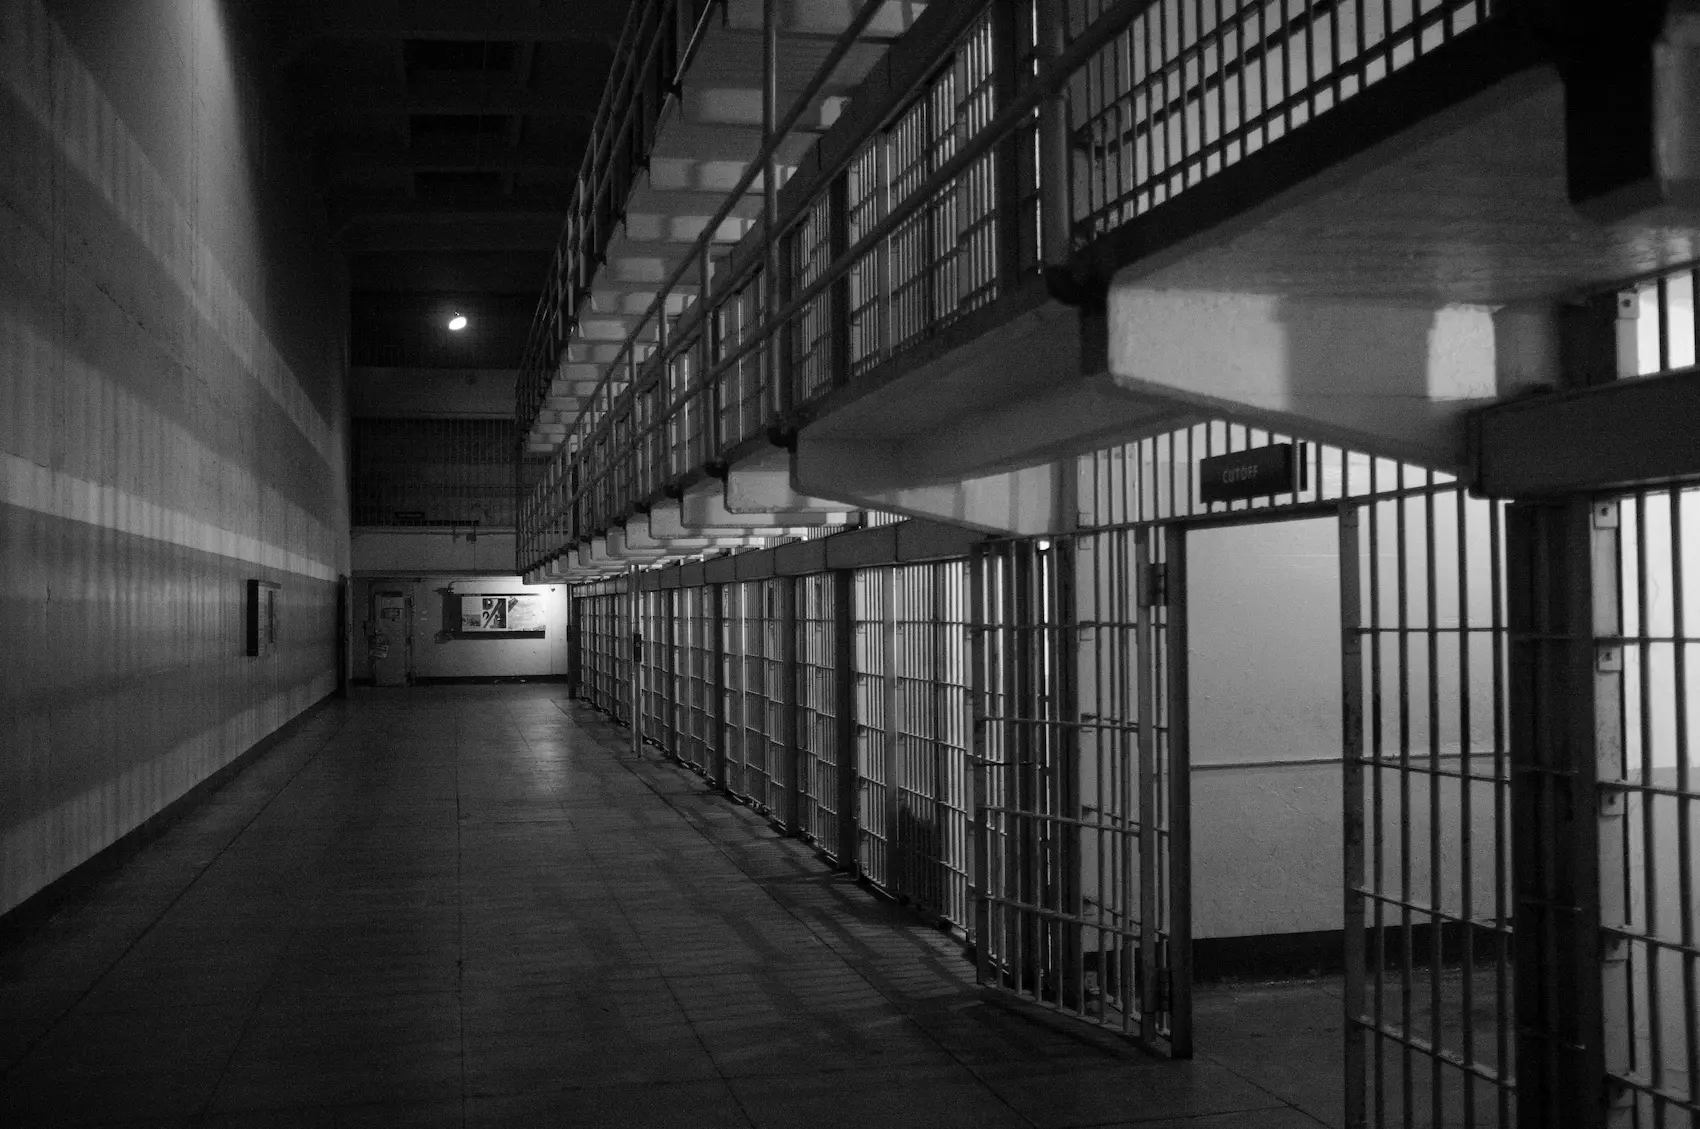 Cárcel - instituciones penitenciarias - CertificadoElectronico.es